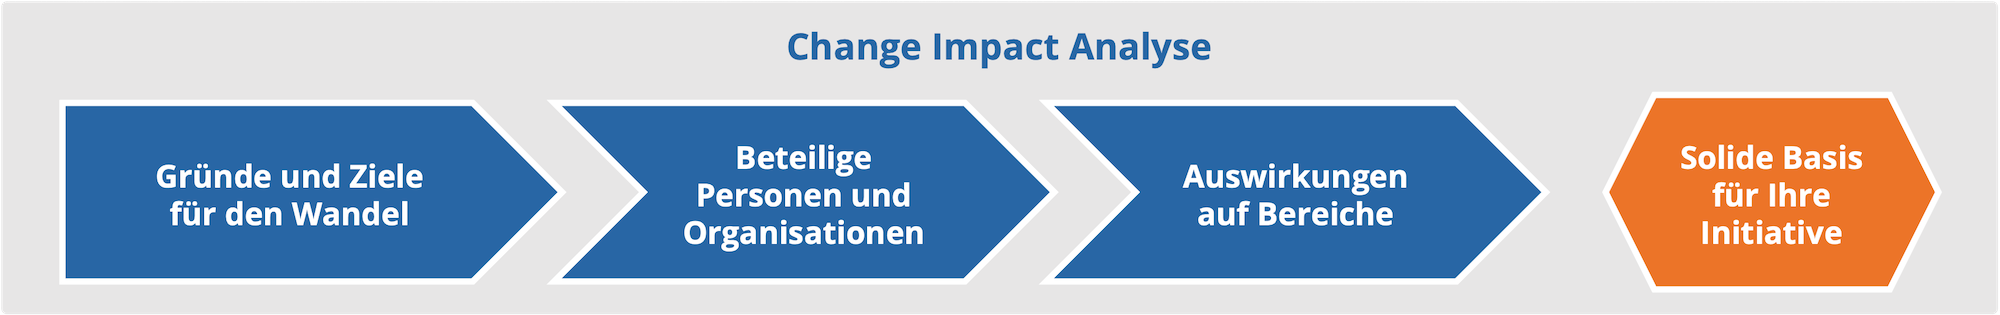 Ablauf der Change Impact Analyse